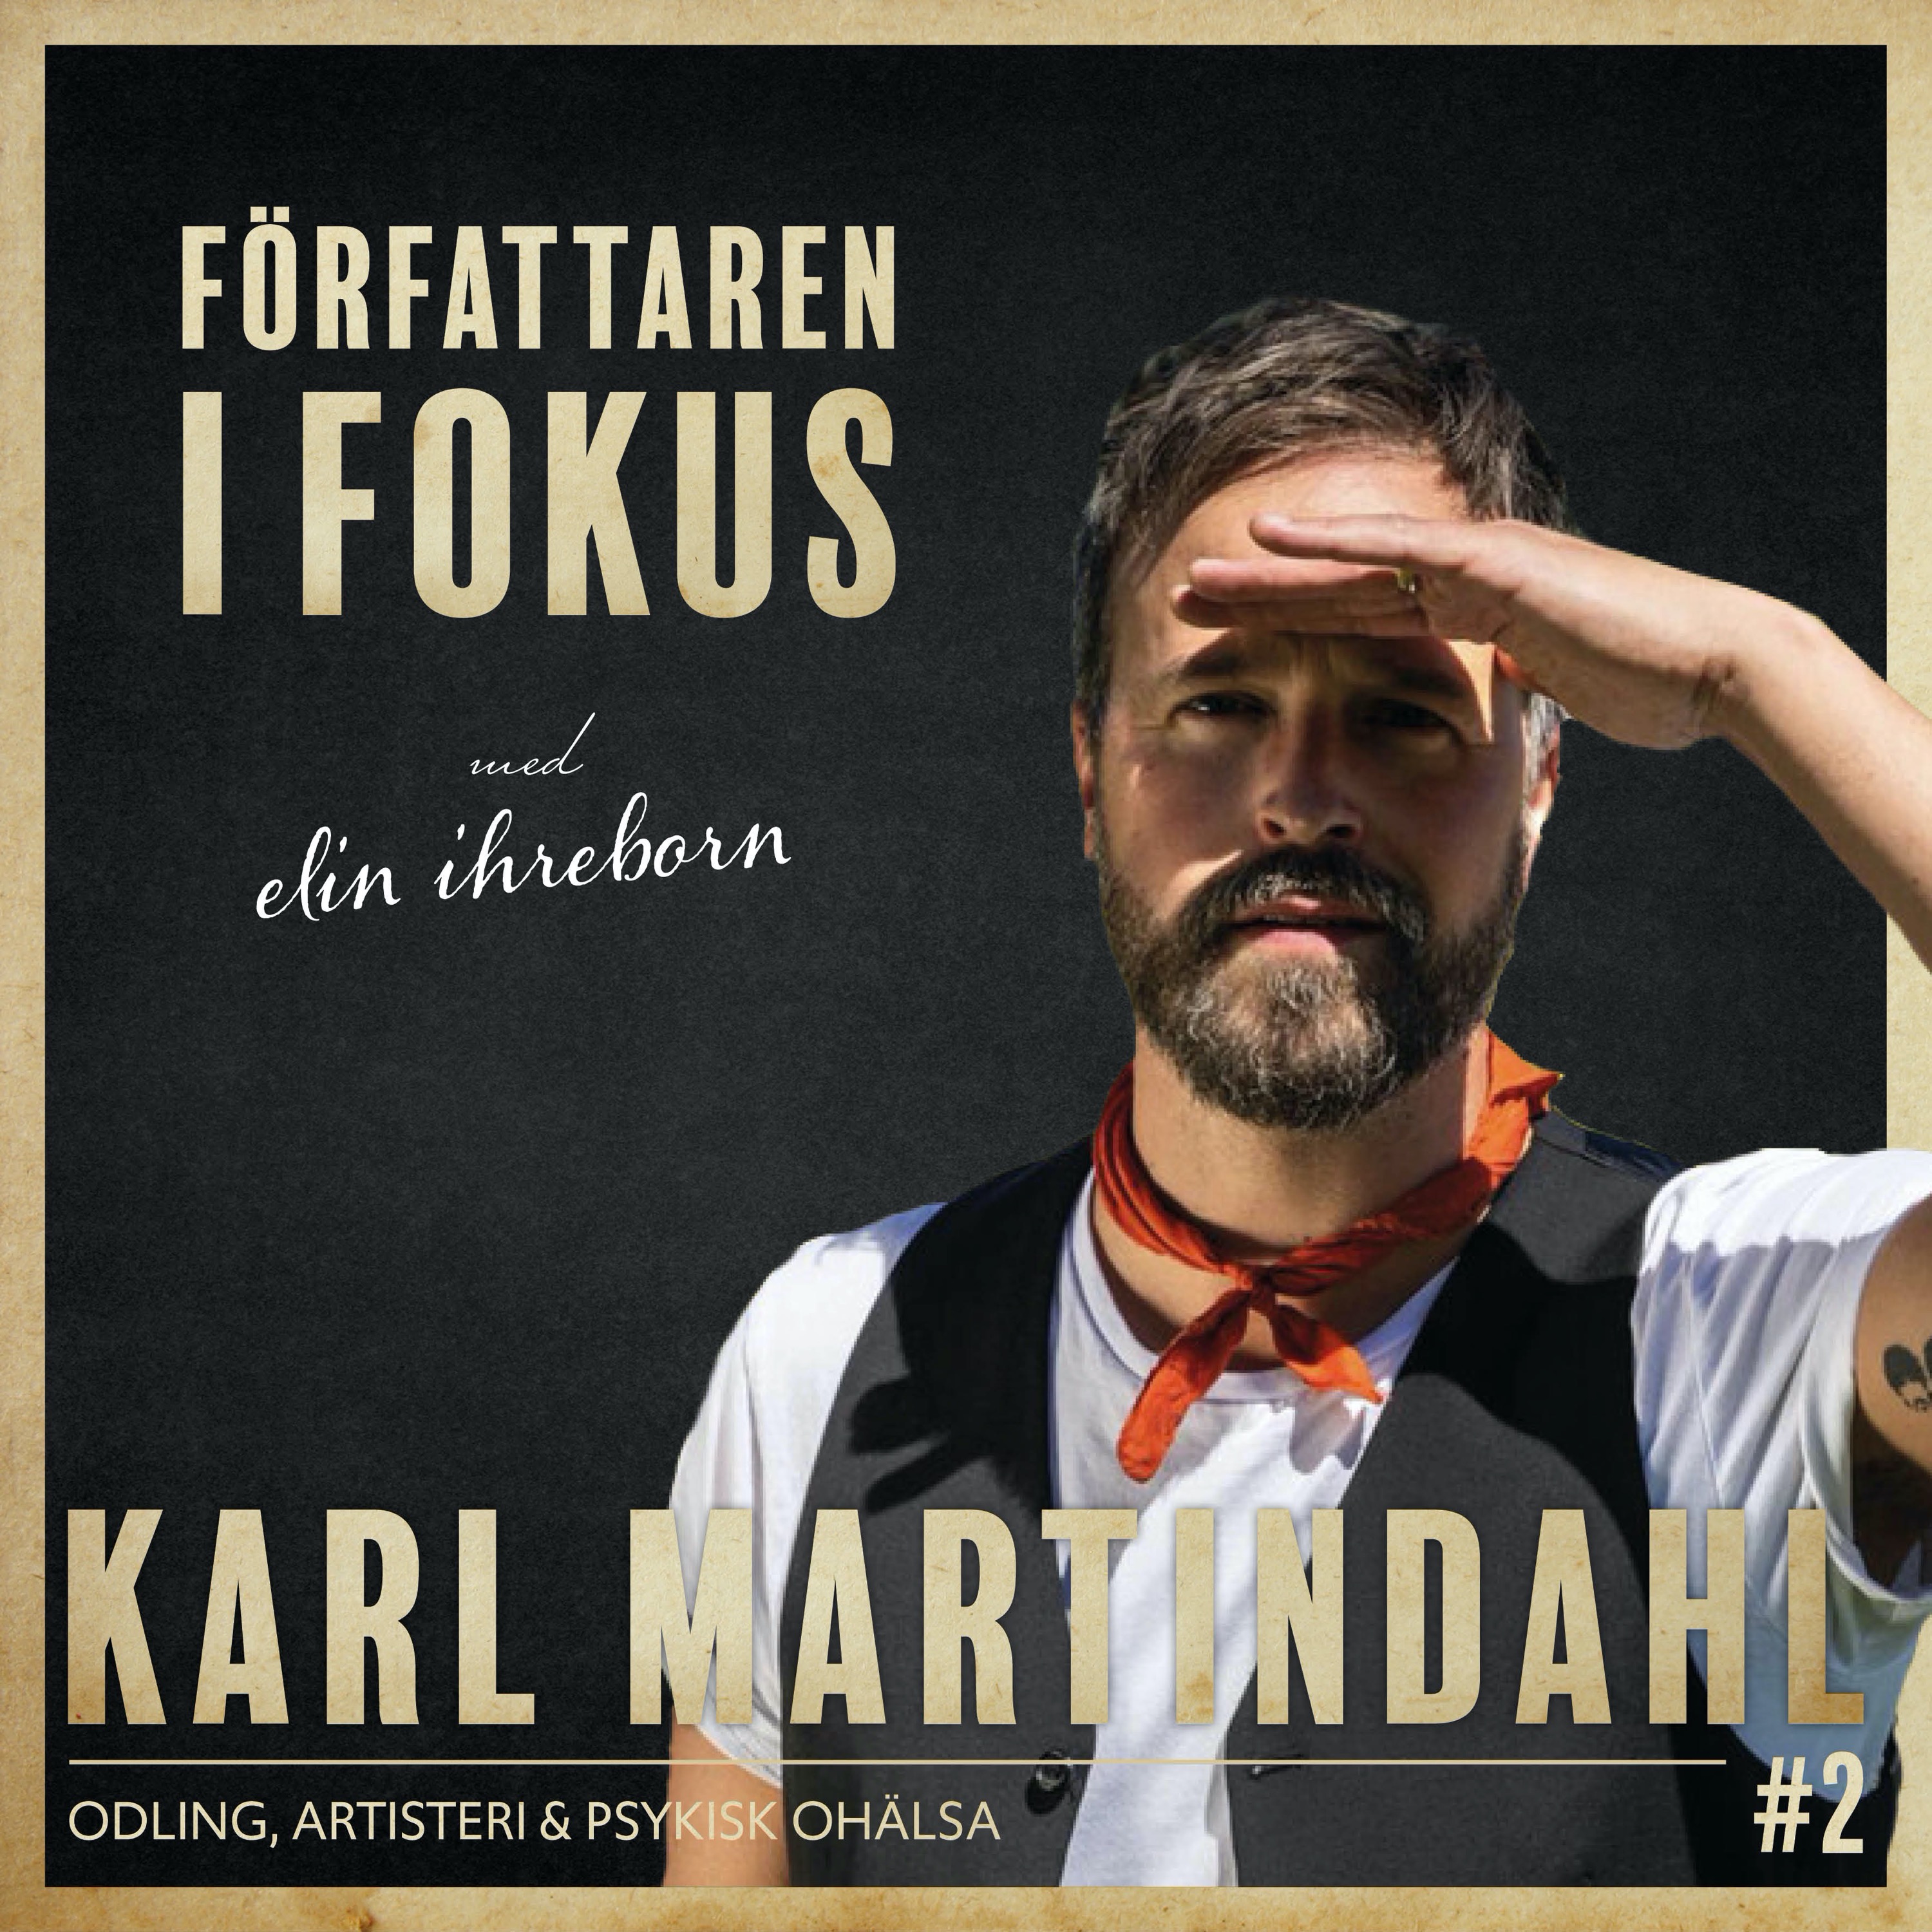 Karl Martindahl – Odling, artisteri och psykisk ohälsa